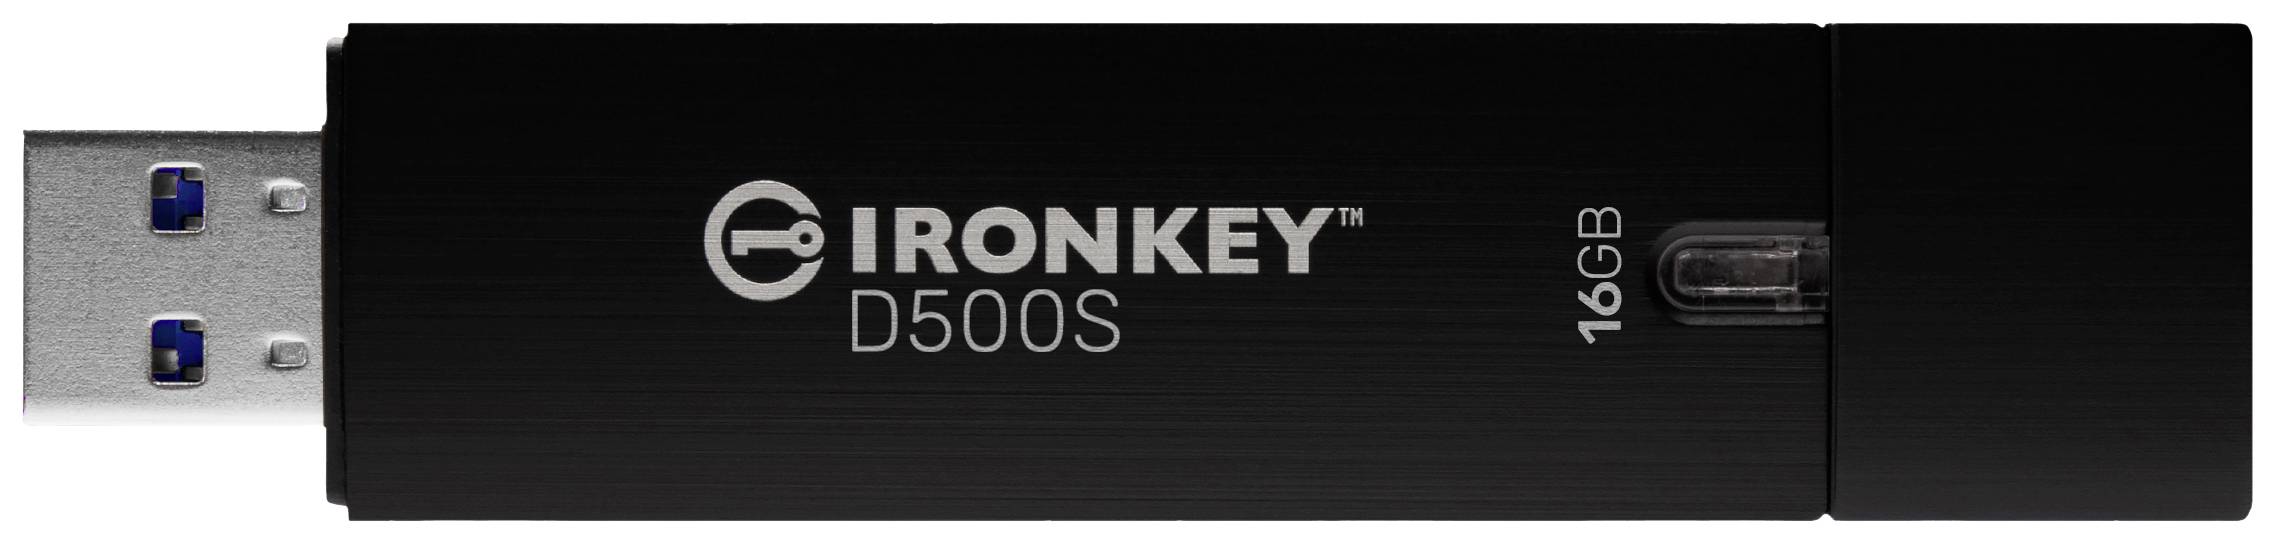 KINGSTON 16 GB IronKey D500S verschlüsselter USB-Stick USB-A 3.2 Gen1 Standard